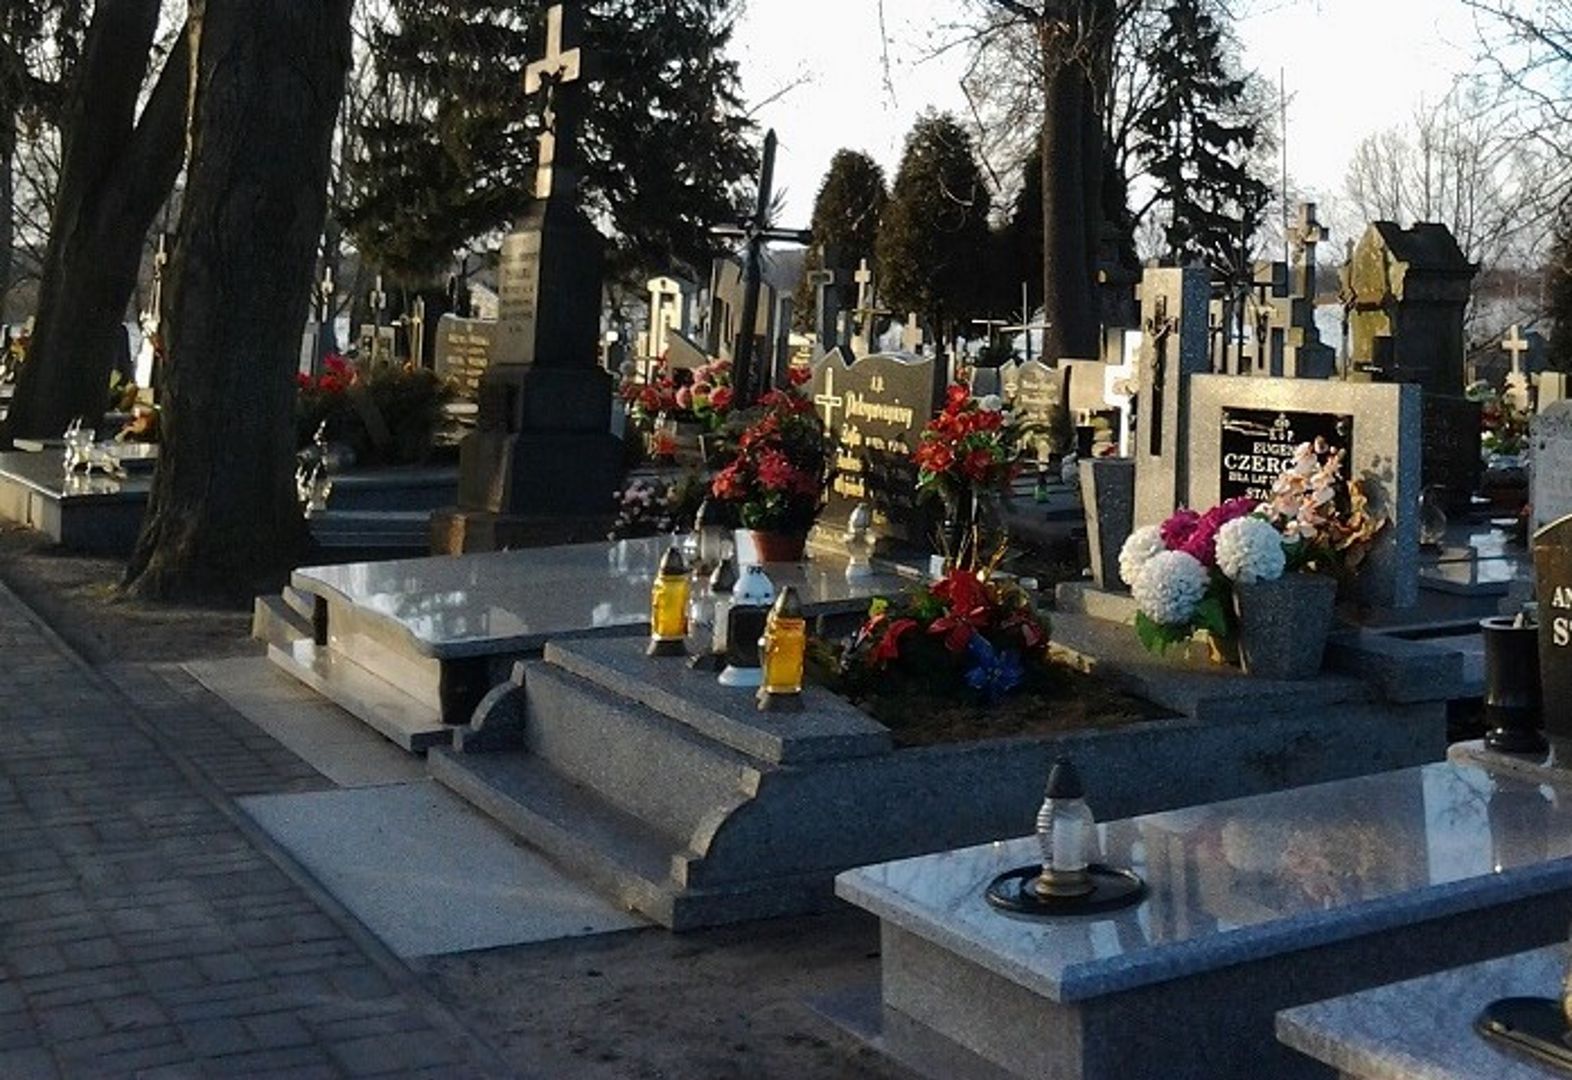 Polski szlagier na cmentarzu. Przechodzący ksiądz aż skomentował